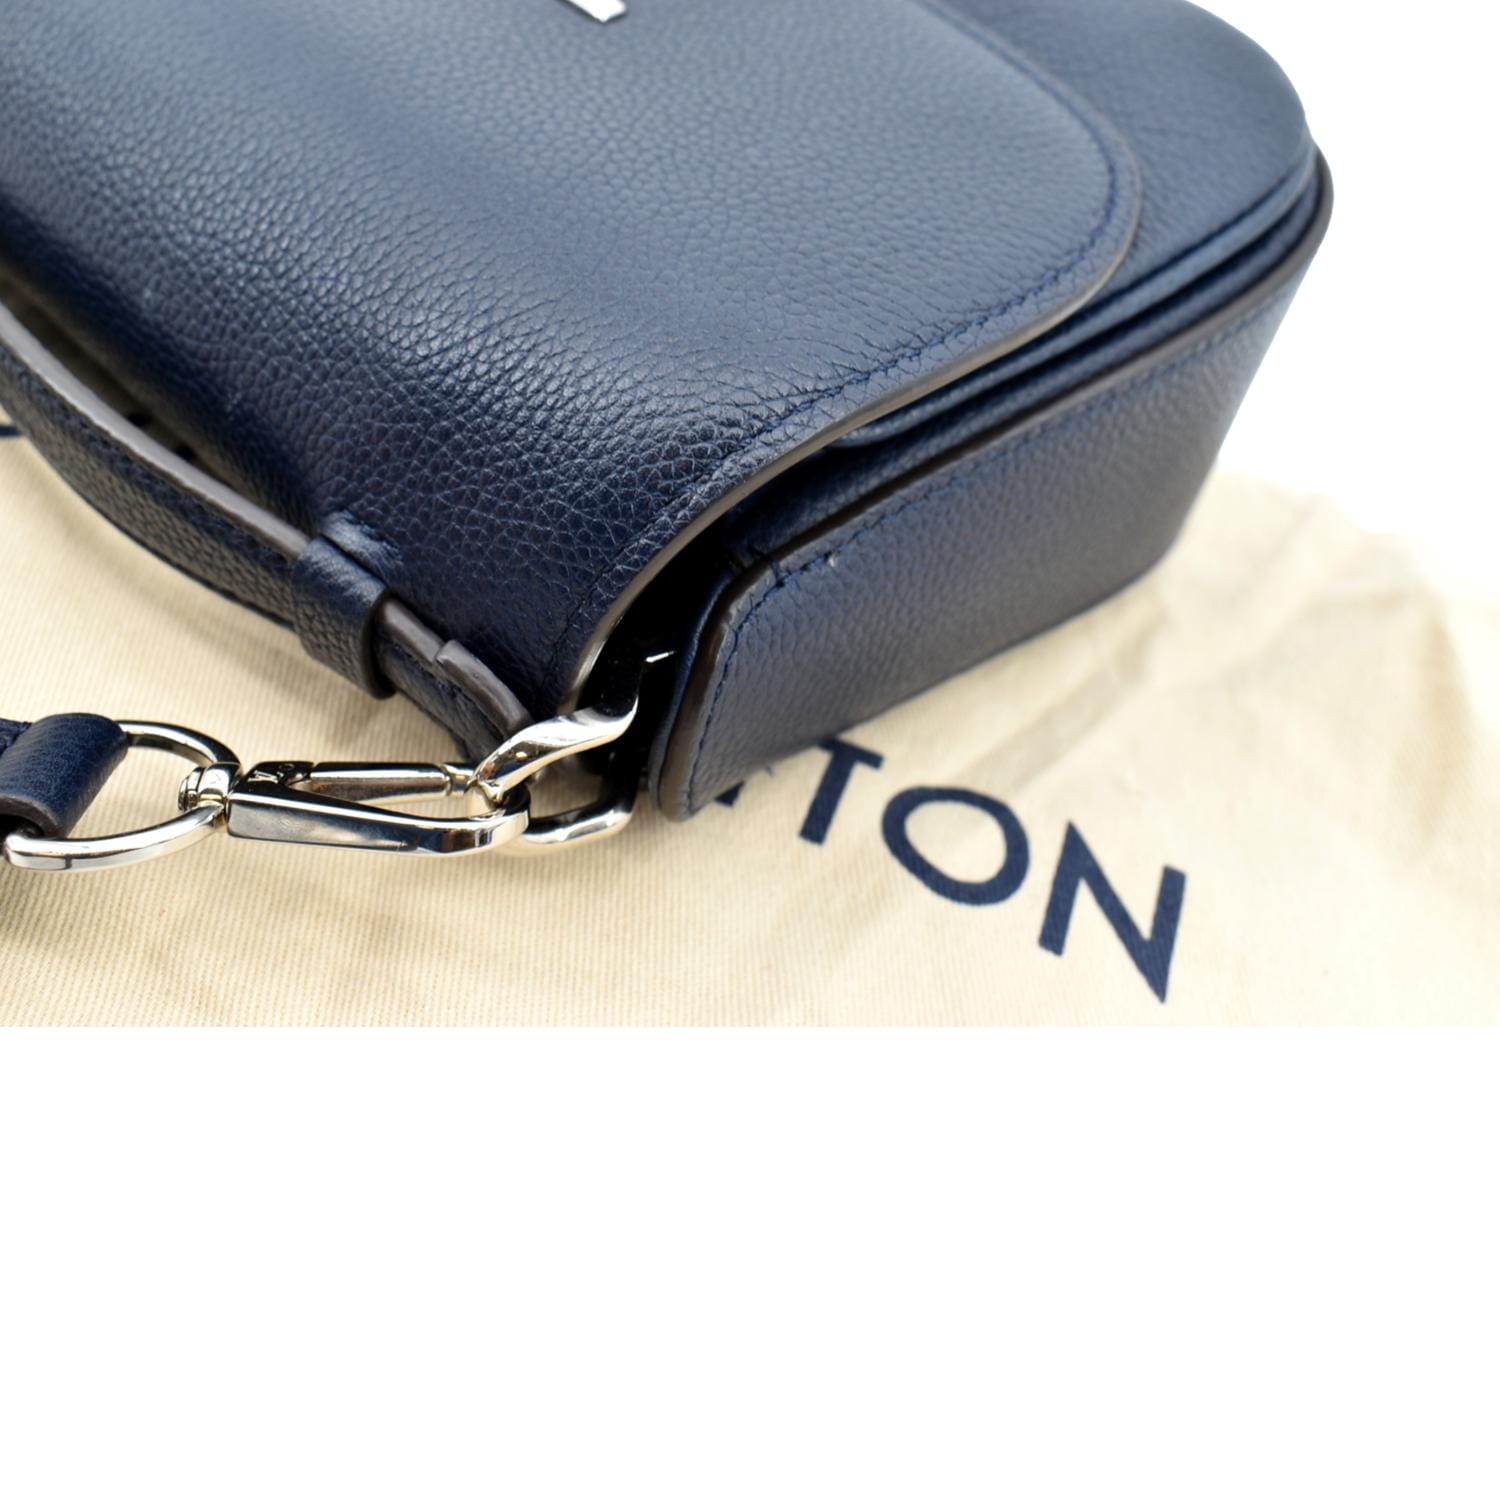 Louis Vuitton Vivienne NM Handbag Leather Blue 1359601